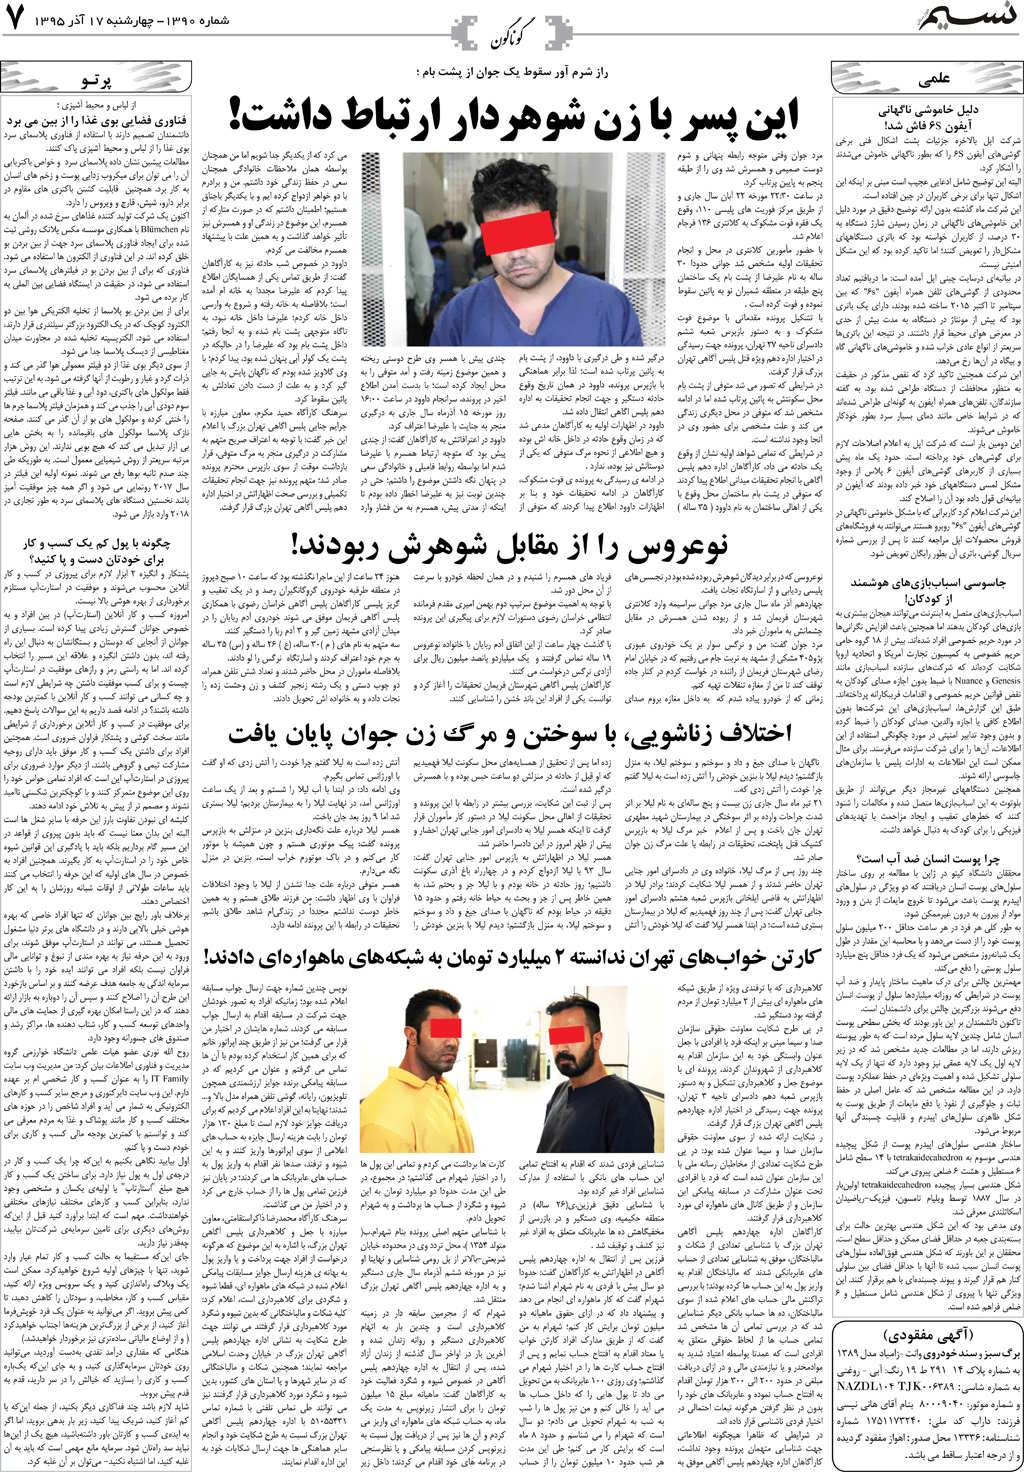 صفحه گوناگون روزنامه نسیم شماره 1390